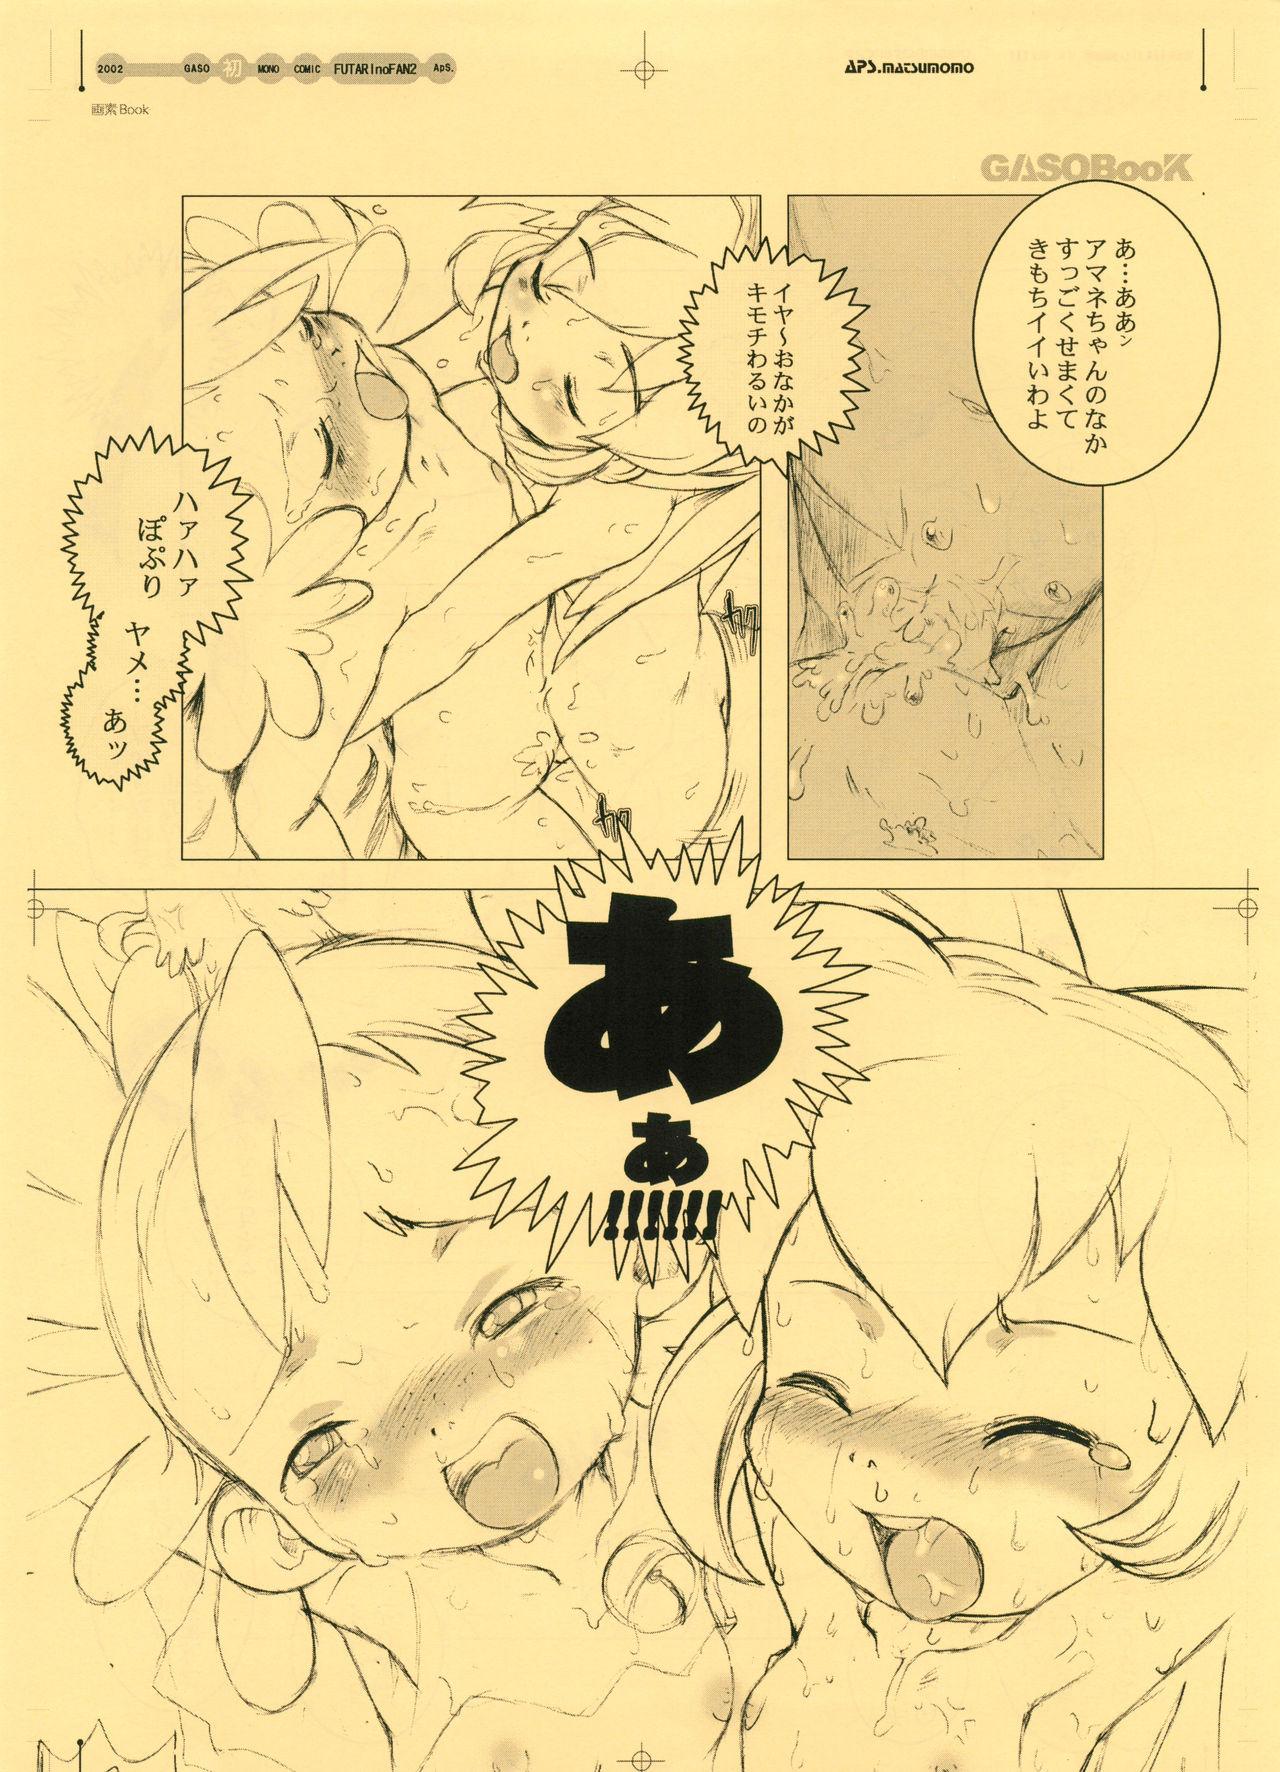 GASOBooK Genkou Youshi Kidz AnimeTronica'Z -0208 22